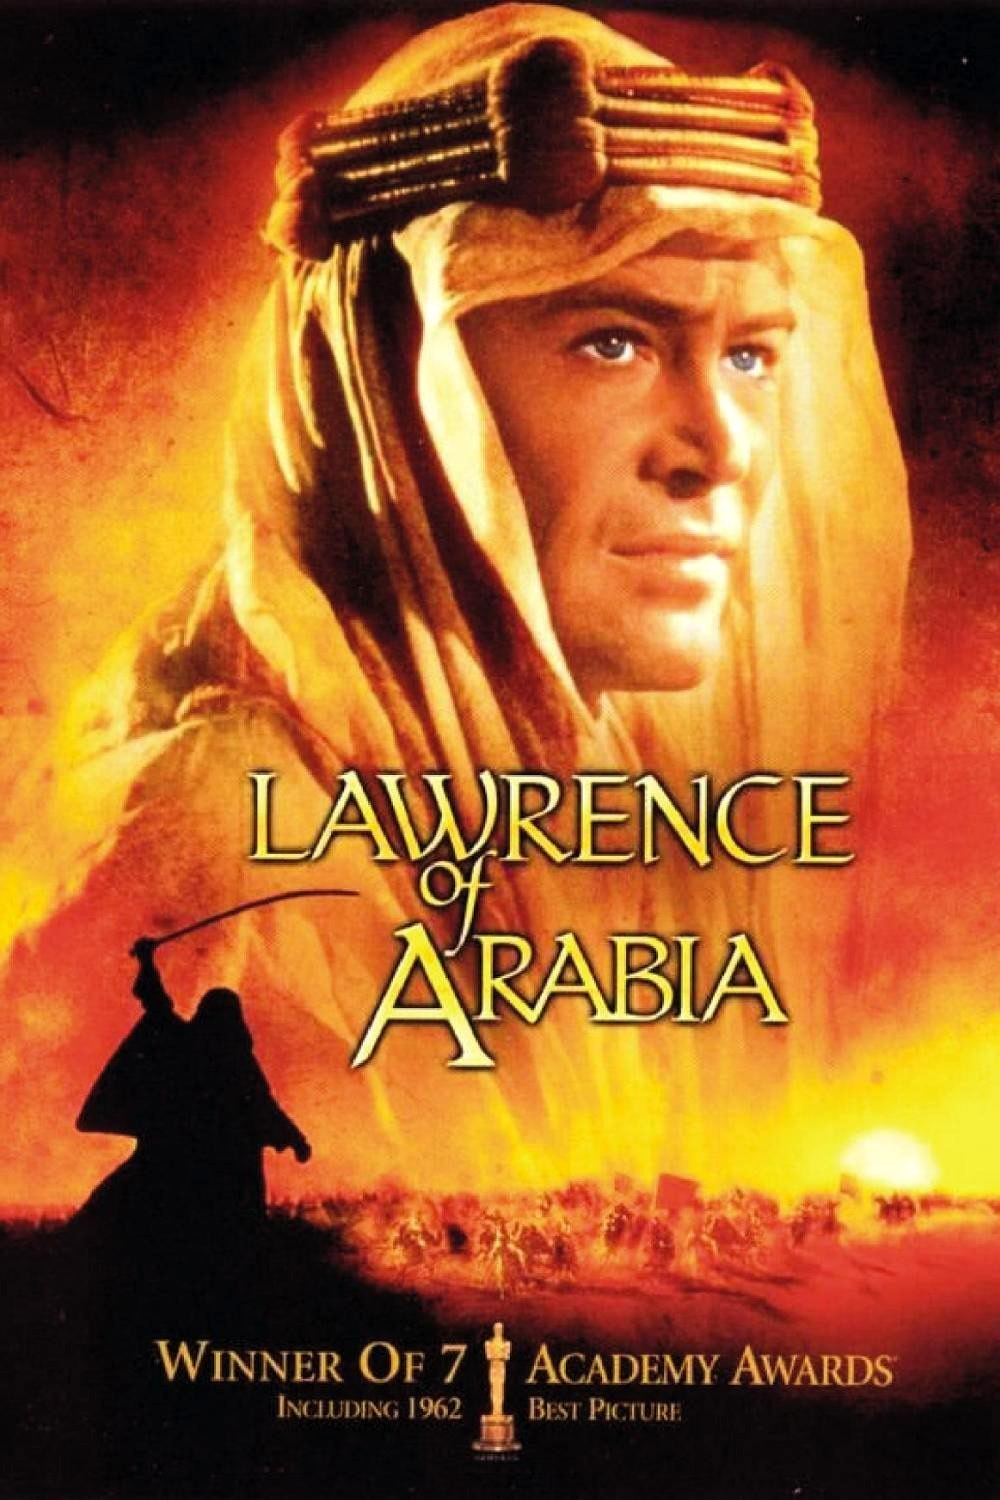 阿拉伯的劳伦斯/沙漠枭雄 Lawrence.of.Arabia.1962.DISC2.2160p.BluRay.REMUX.HEVC.DTS-HD.MA.TrueHD.7.1.Atmos-FGT 46.10GB-1.jpeg